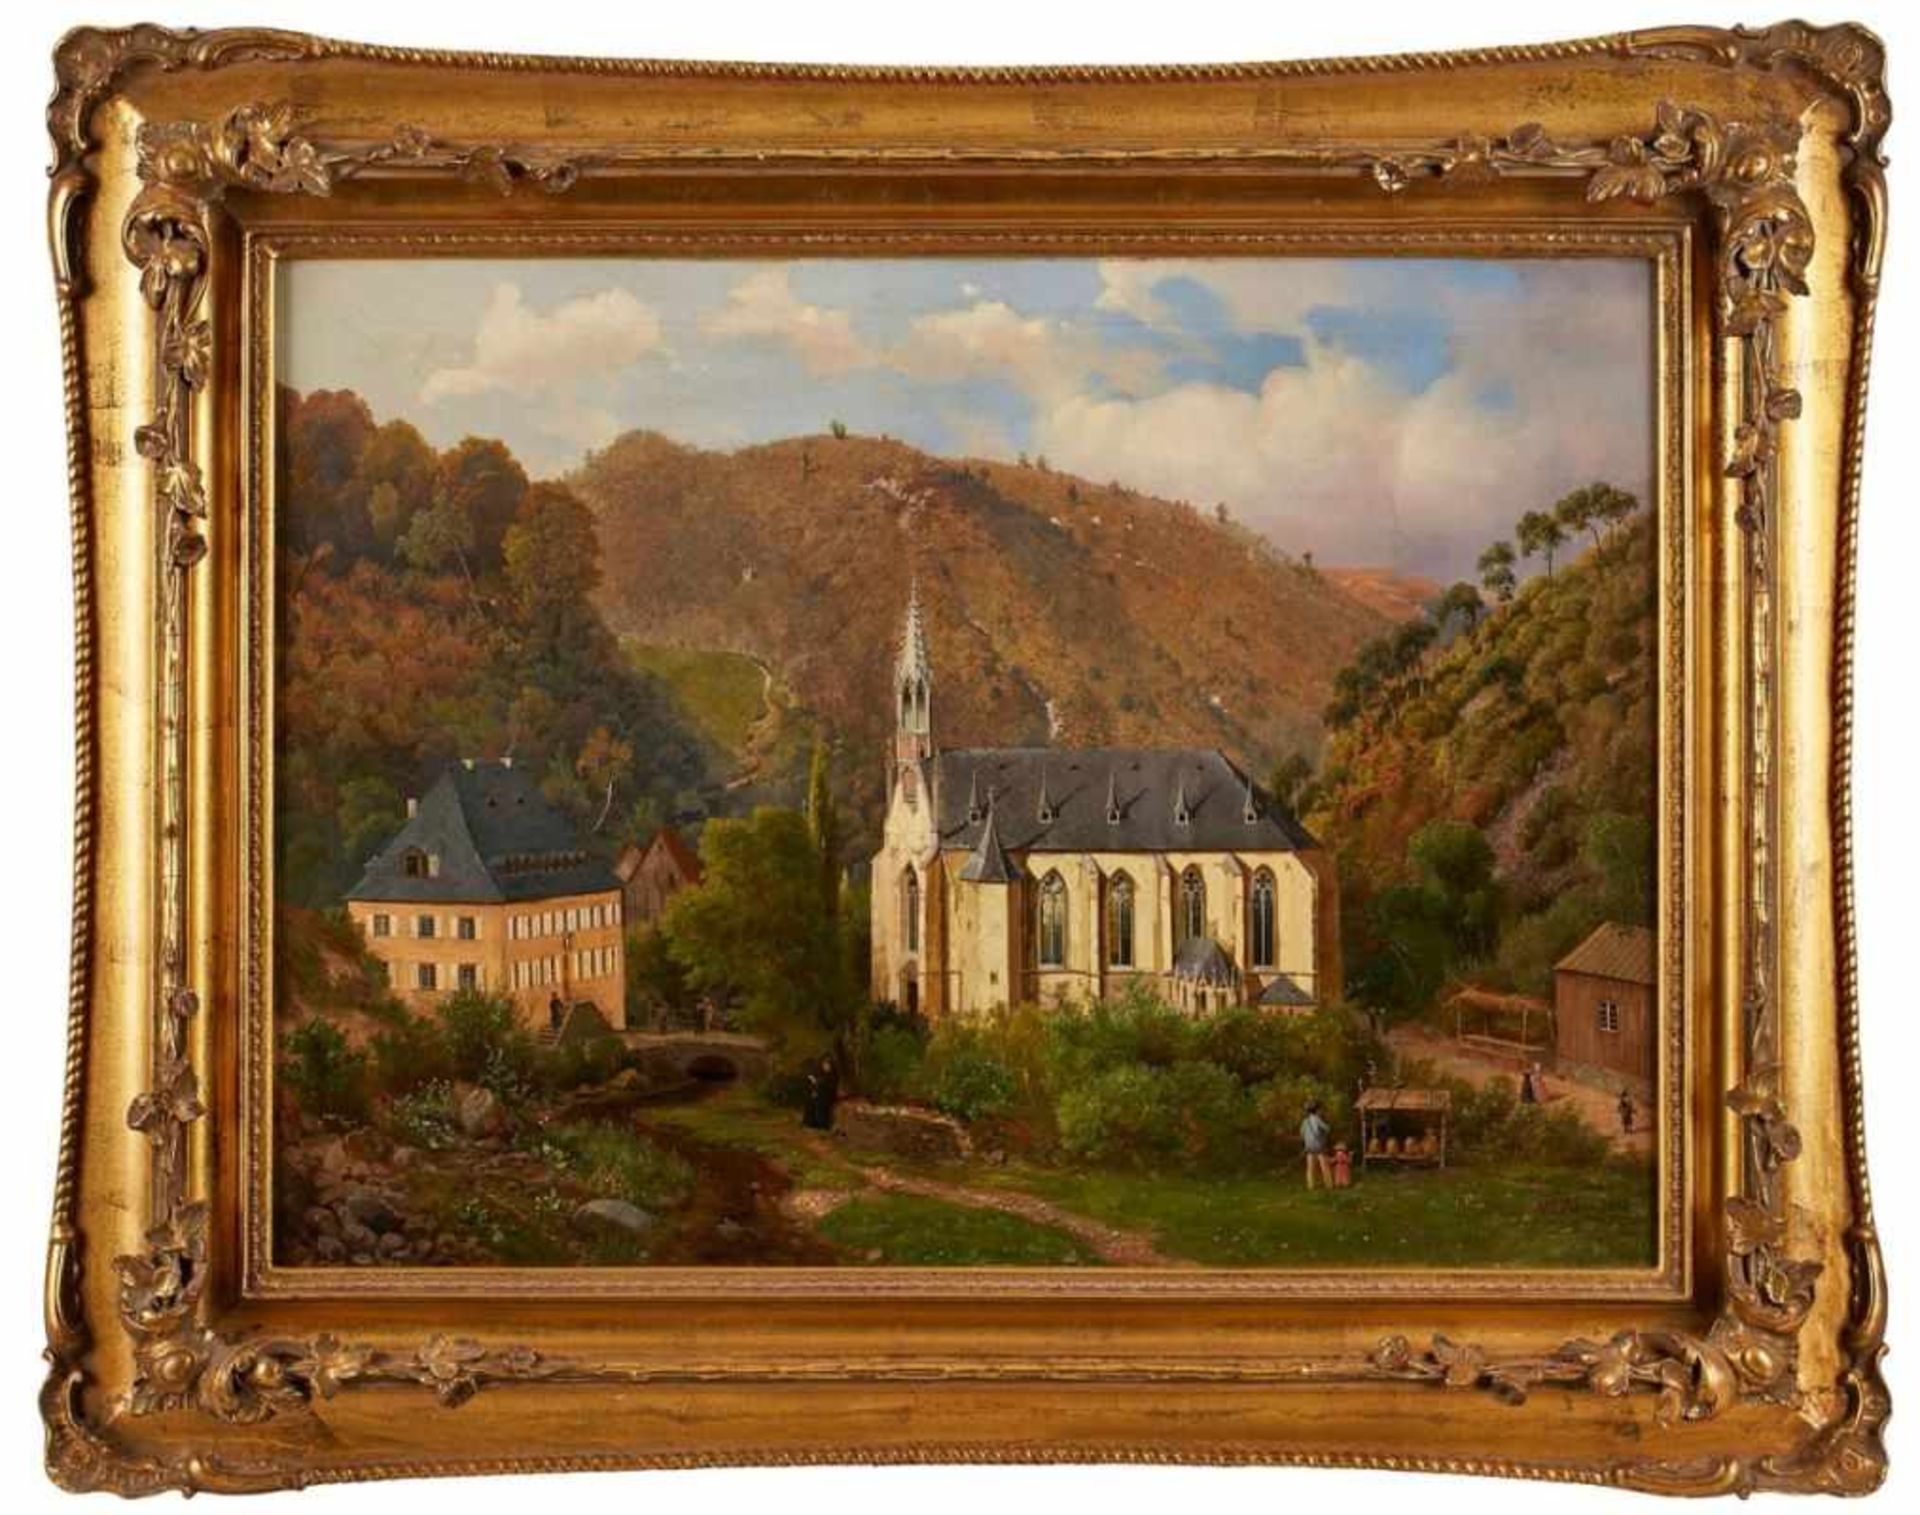 Gemälde Wilhelm Zobus1831 Geisenheim - 1869 Geisenheim Studierte in Düsseldorf bei K. Fr. Lessing,